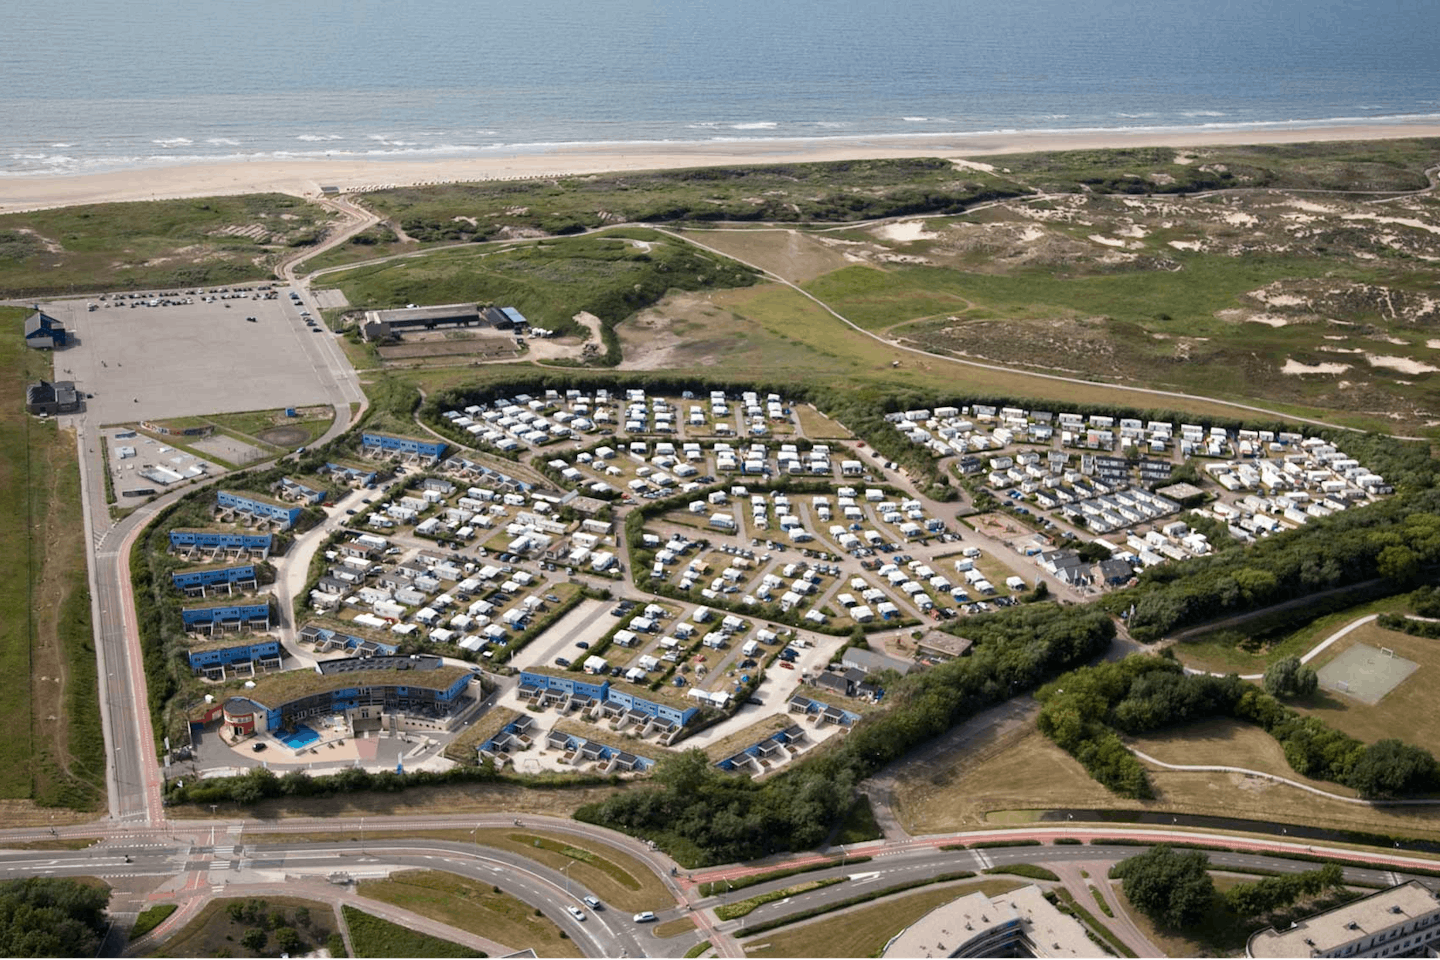 Vakantiepark Noordduinen - Luftaufnahme vom Campingplatz an der Nordsee